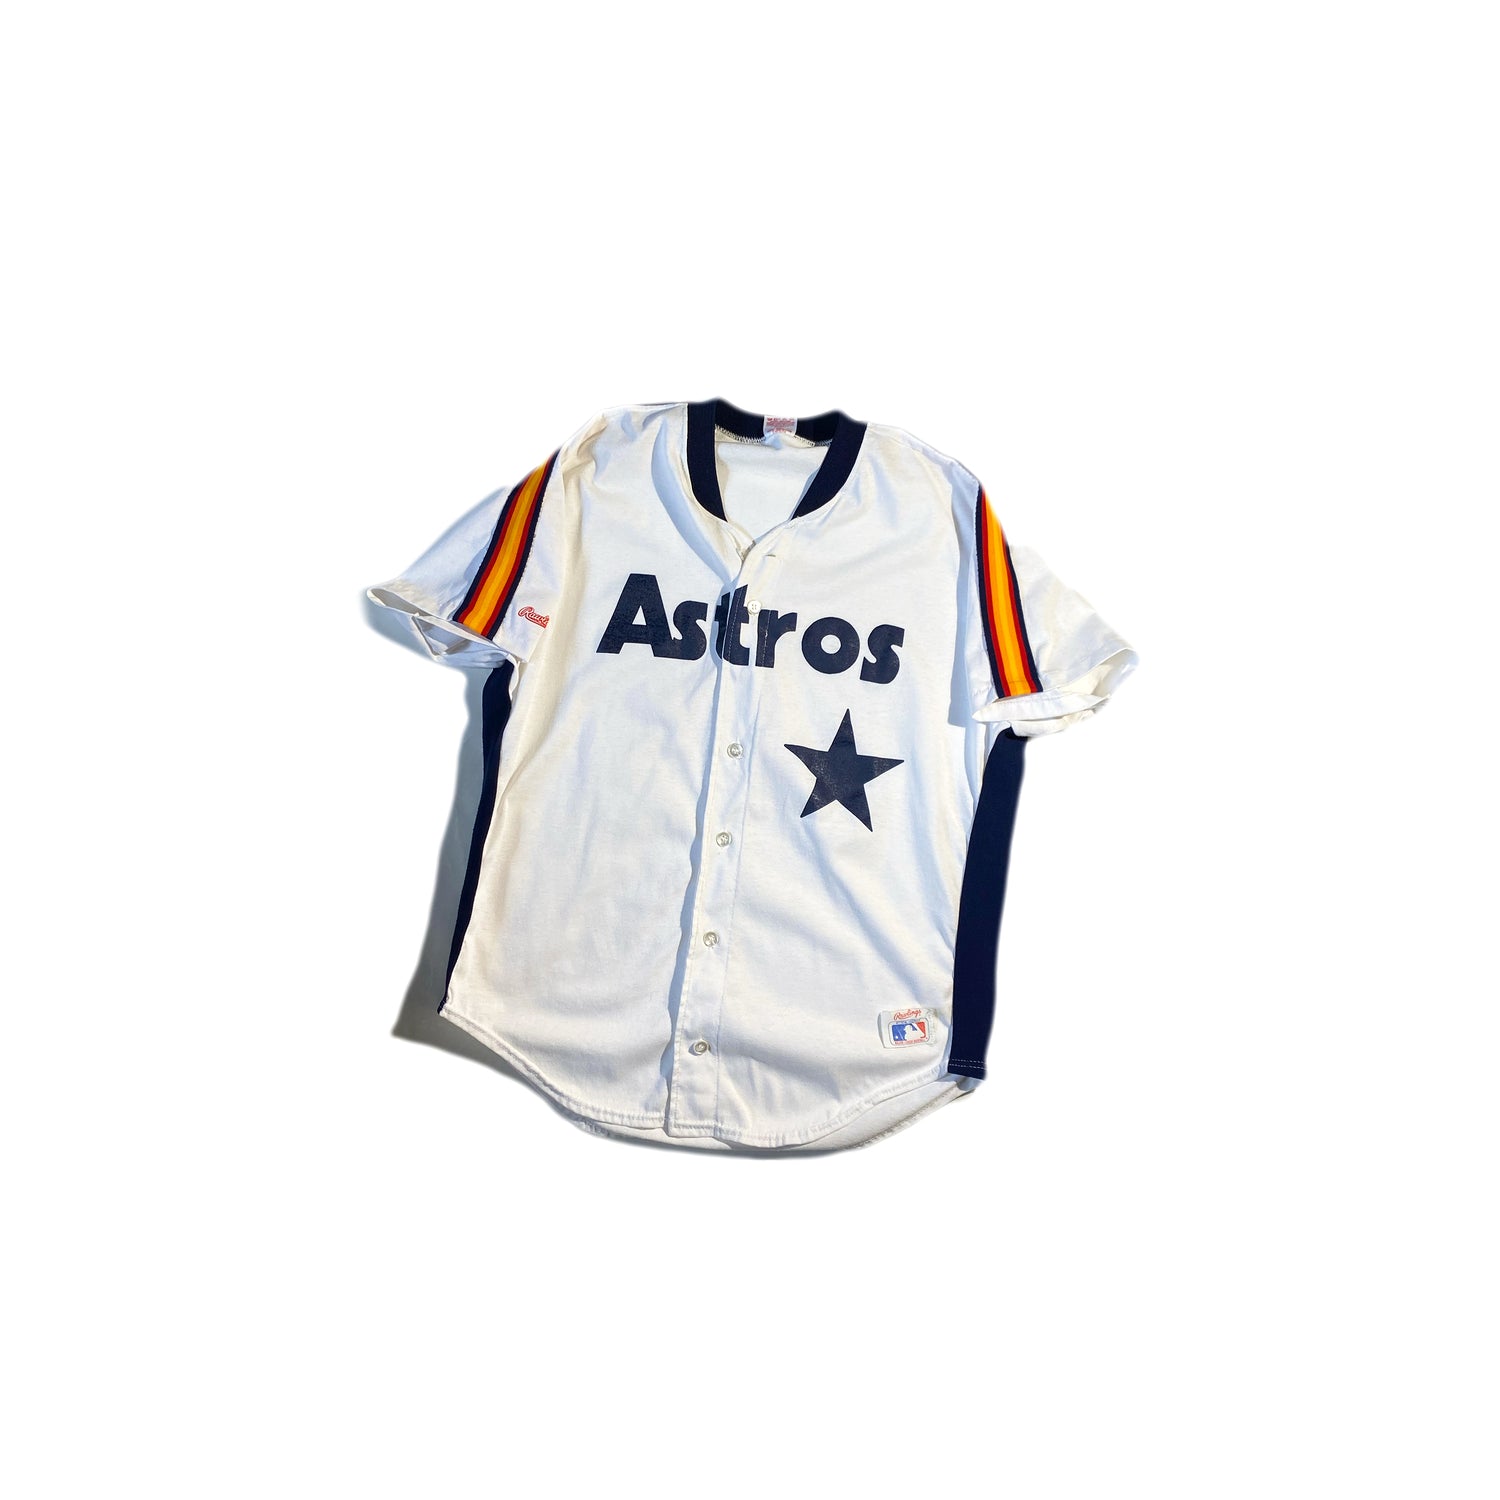 astros jersey shirt